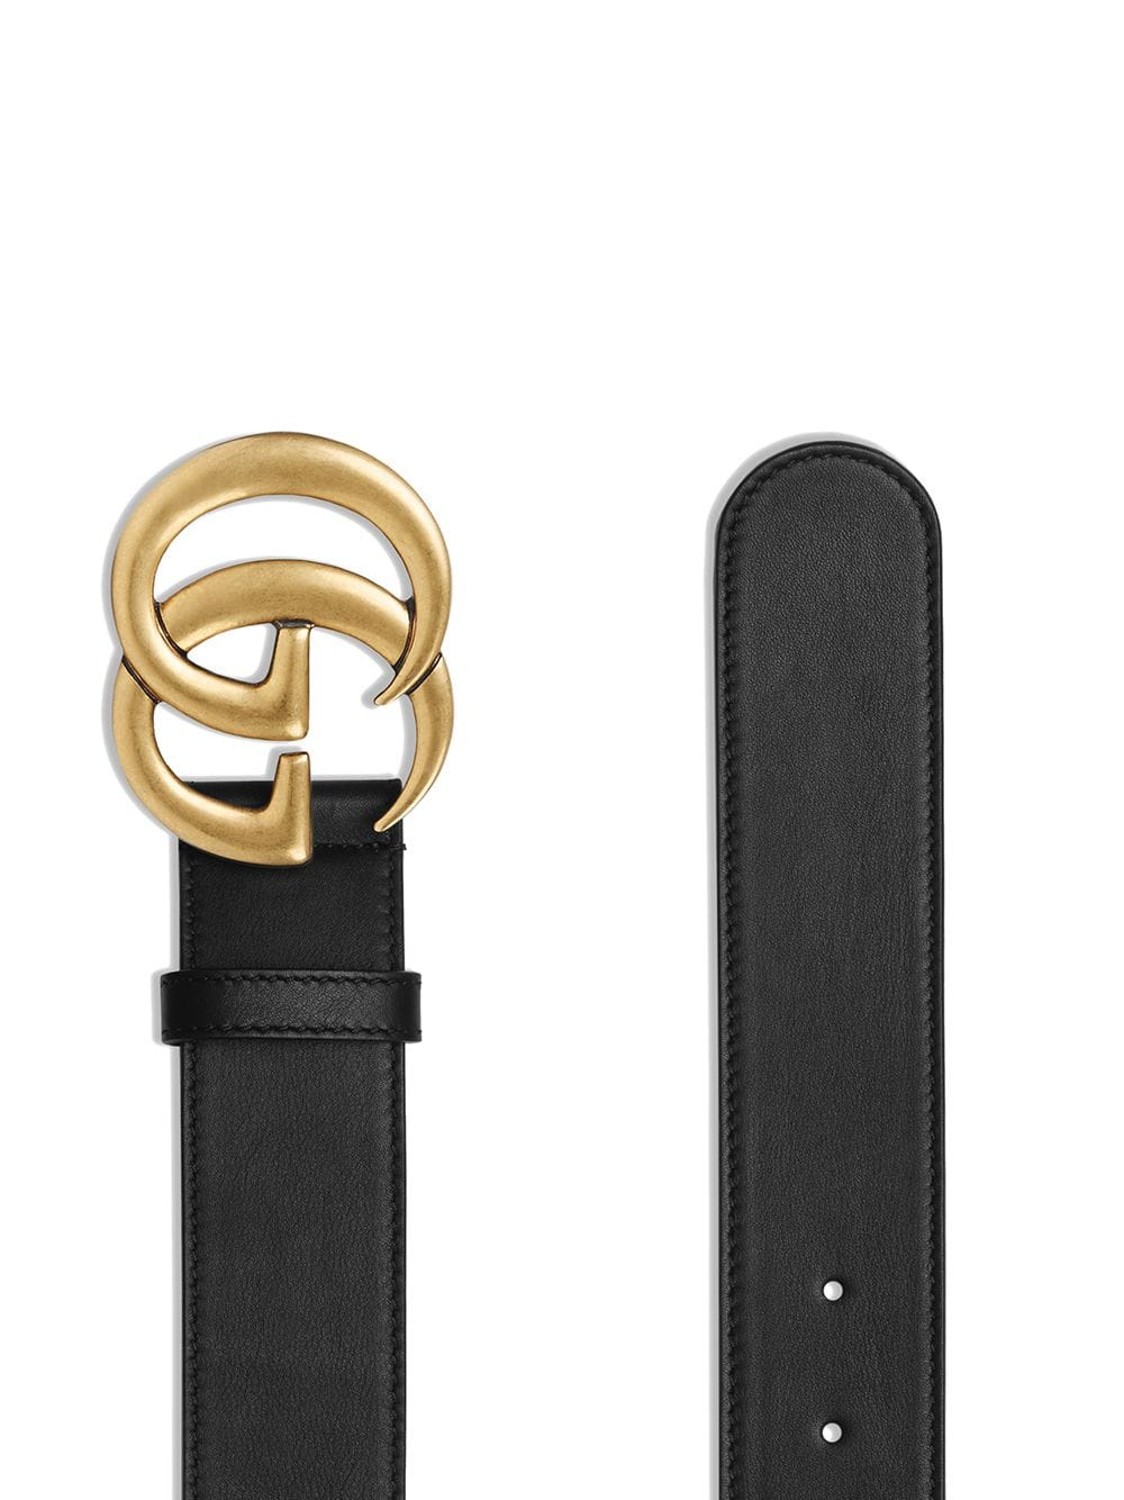 shop GUCCI Saldi Cintura: Cintura Gucci in pelle con fibbia GG marmont oro.
Finiture in ottone.
Larghezza 4 cm.
Made in italy. 397660 AP00T-1000 number 644579